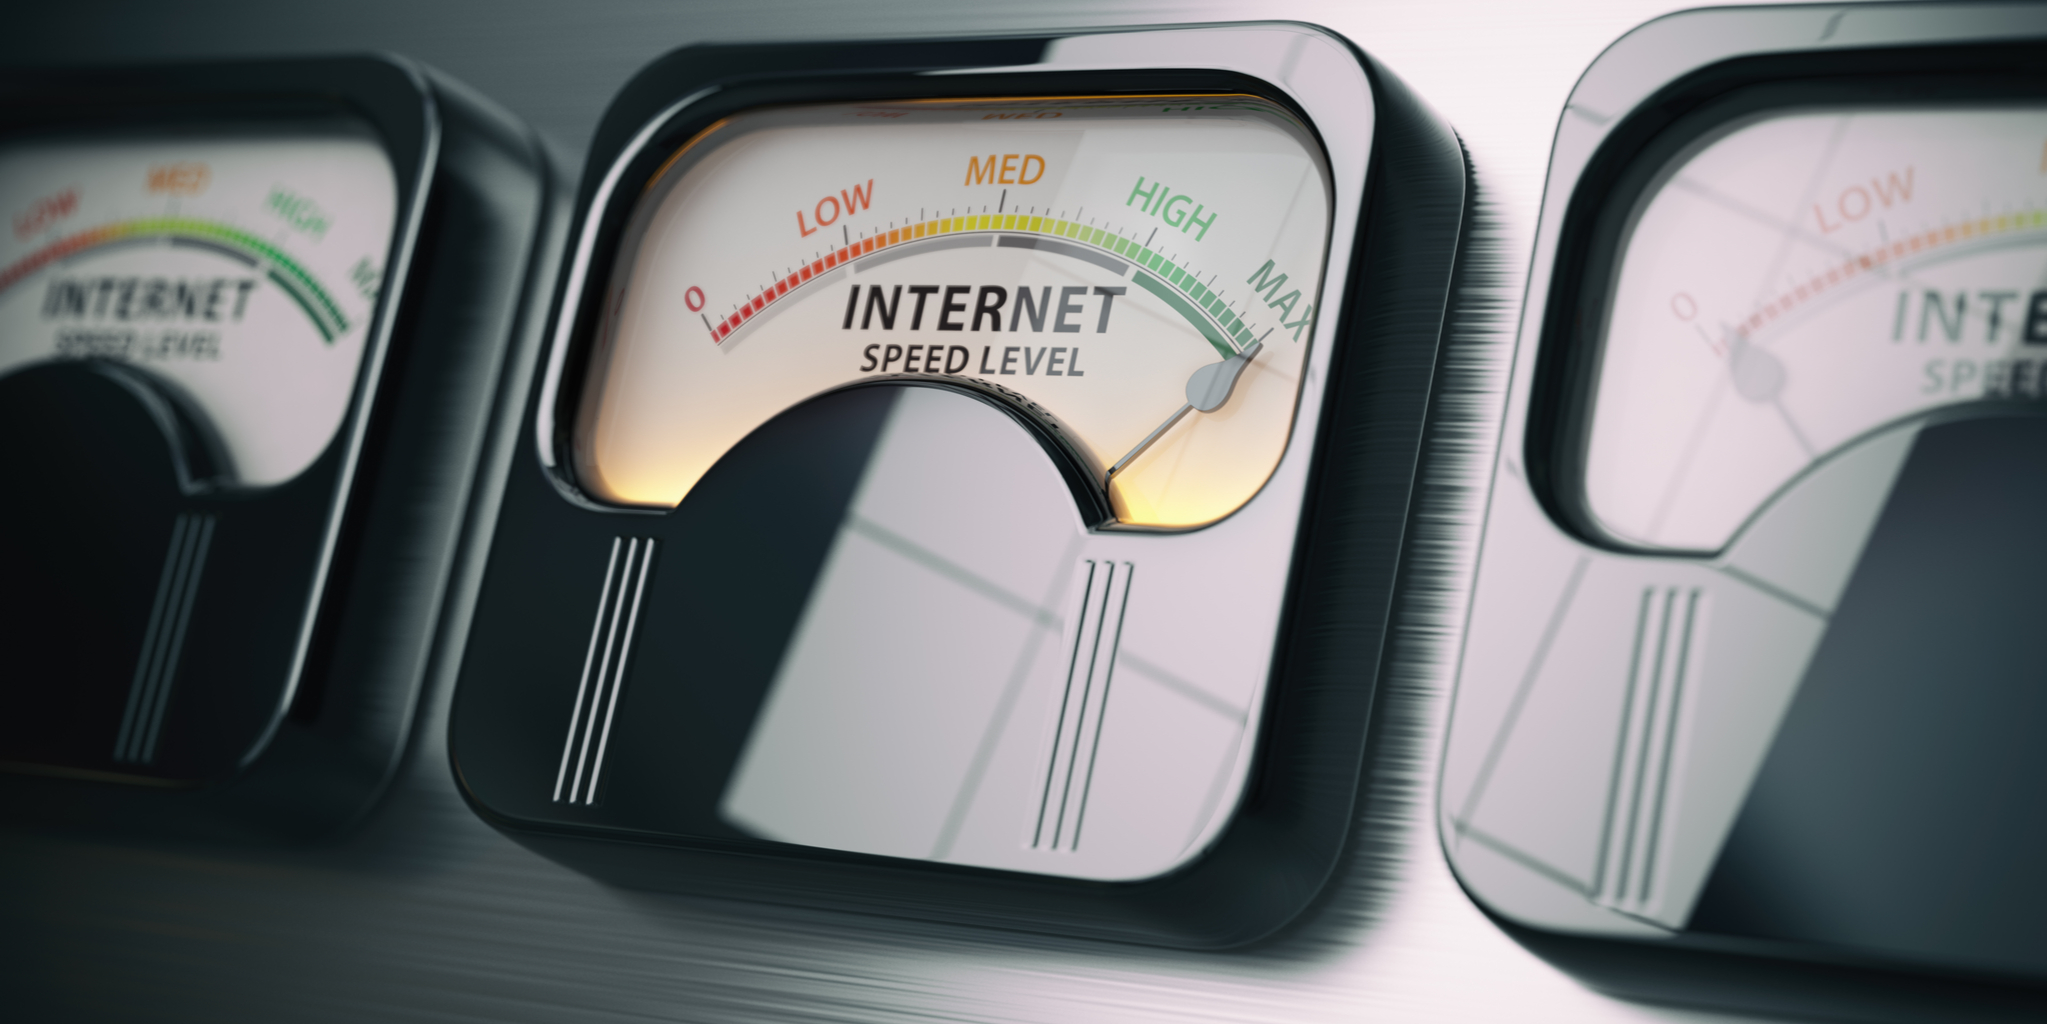 Jalur lebar terbaik 2019: Penyedia perkhidmatan internet UK terbaik